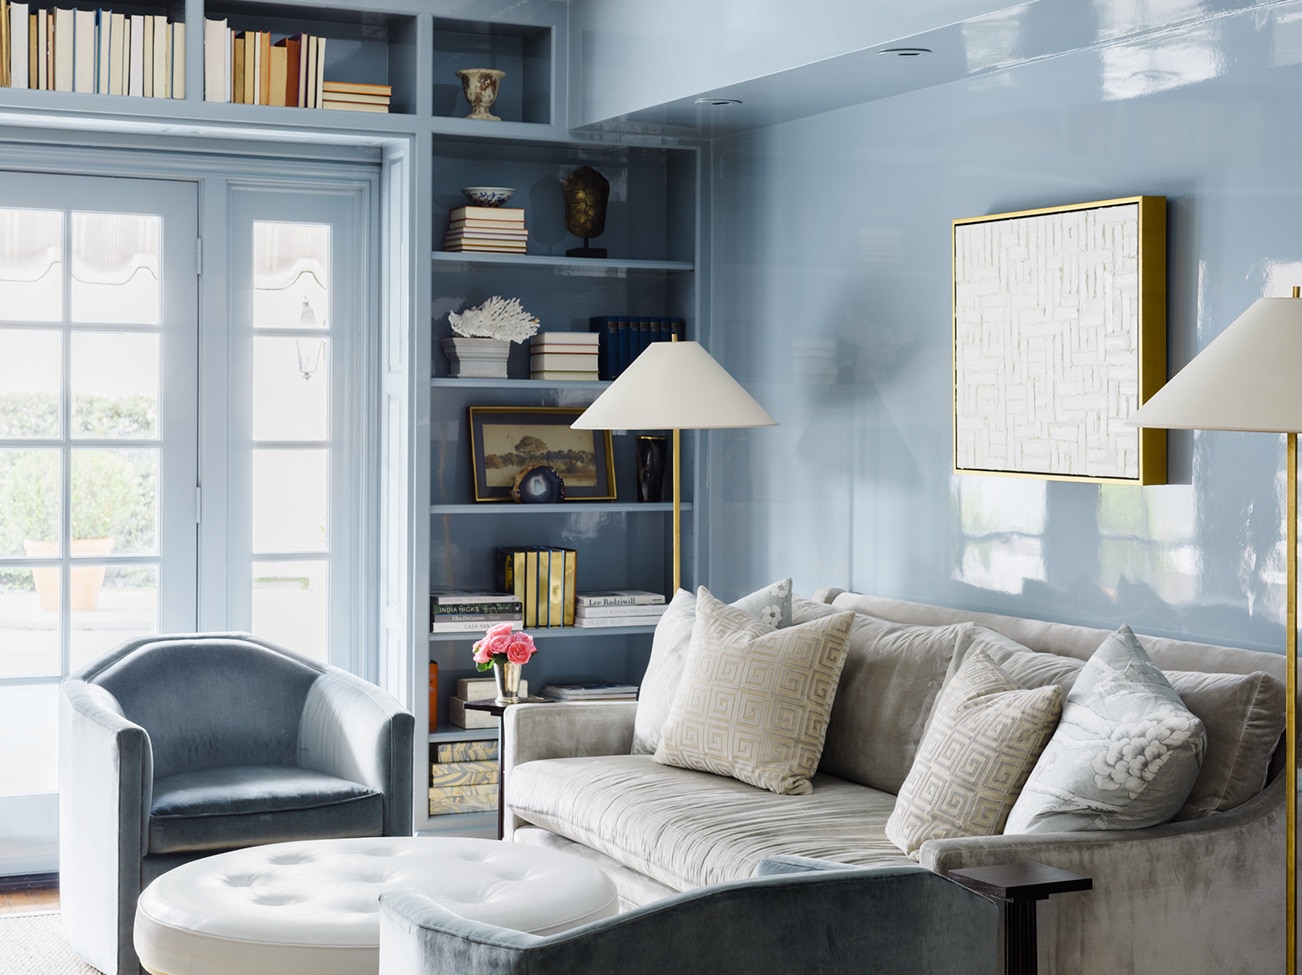 Bureau bleu pâle au fini très lustré, canapé gris, pouf en cuir blanc, fauteuils bleus et porte-fenêtre qui éclaire la pièce.